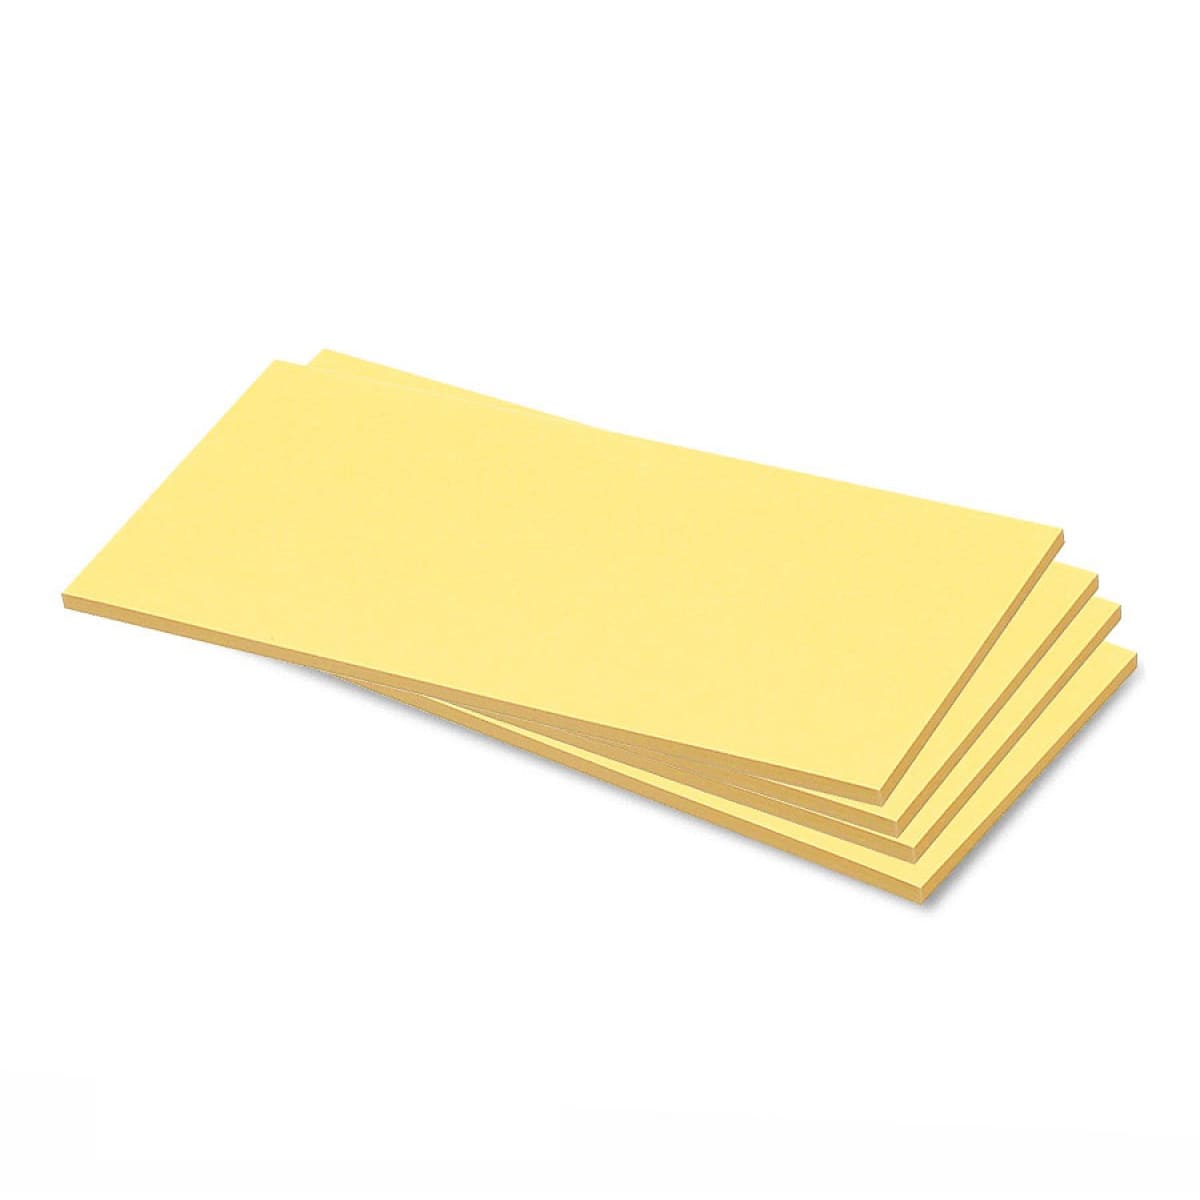 Zelfklevende rechthoekkaarten, uni kleuren- 5 gelb